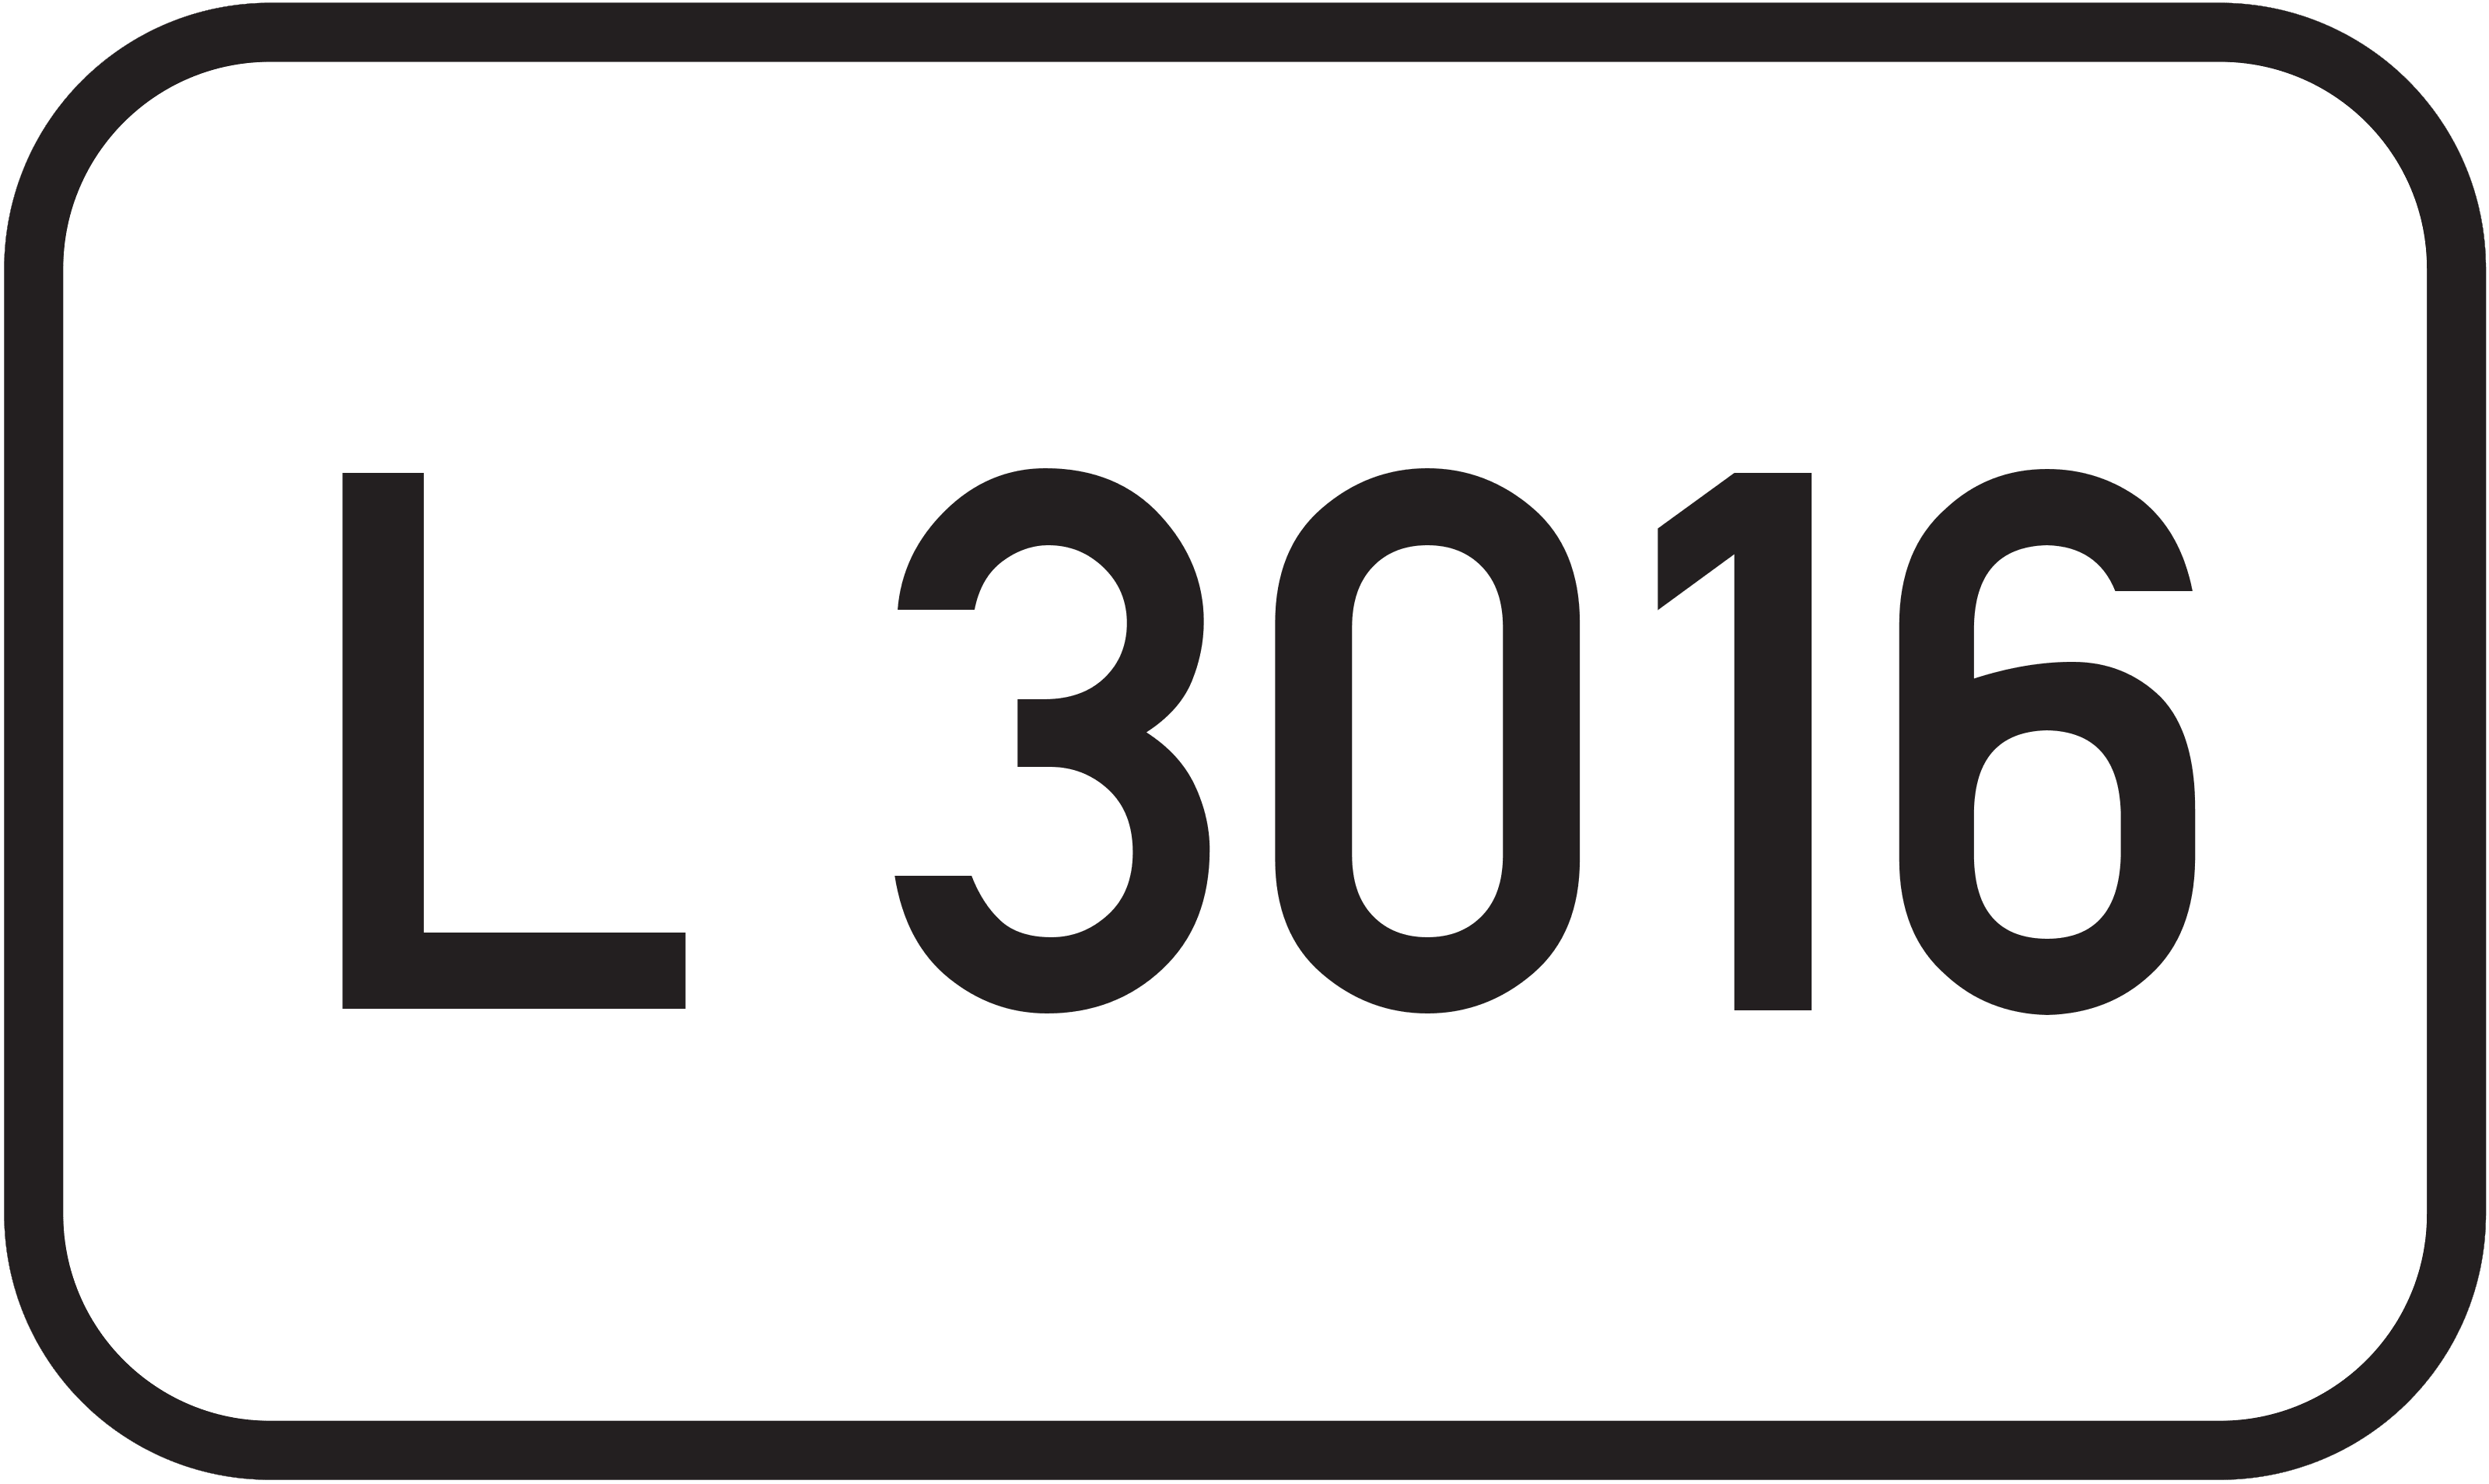 Landesstraße L 3016